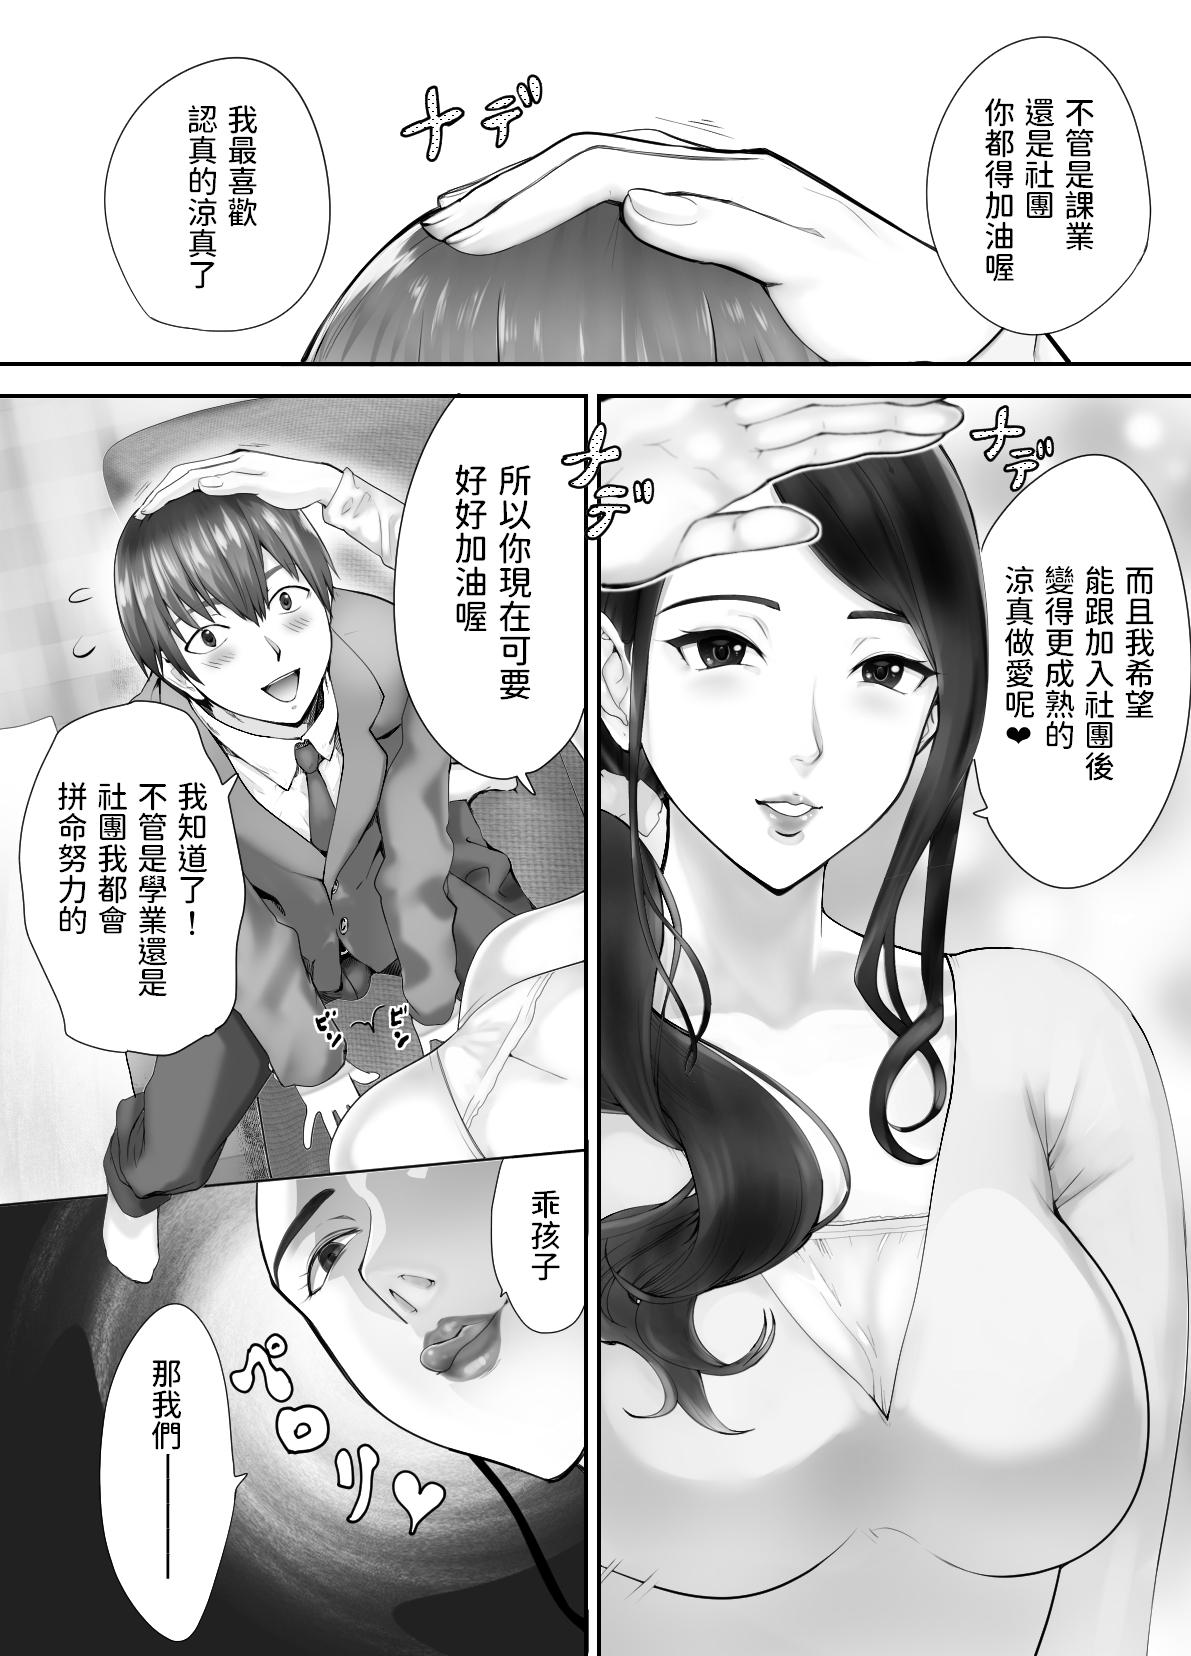 Polla Osananajimi ga Mama to Yatte Imasu. 3 - Original Asslicking - Page 10